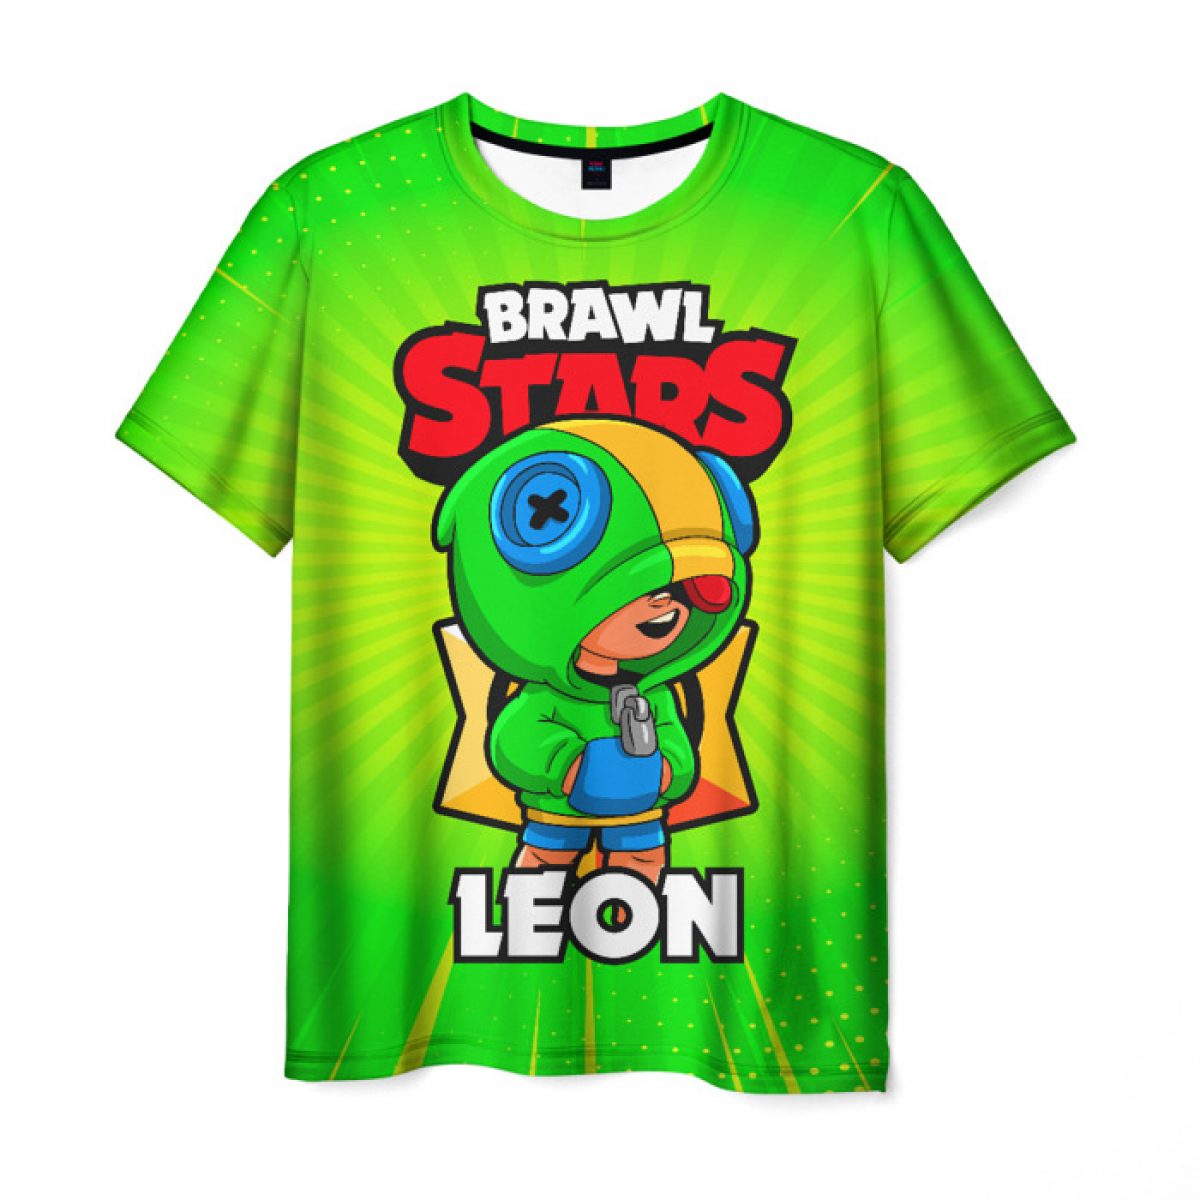 Buy Men S T Shirt Green Design Print Brawl Stars Leon Idolstore - brawl stars картинки для печати